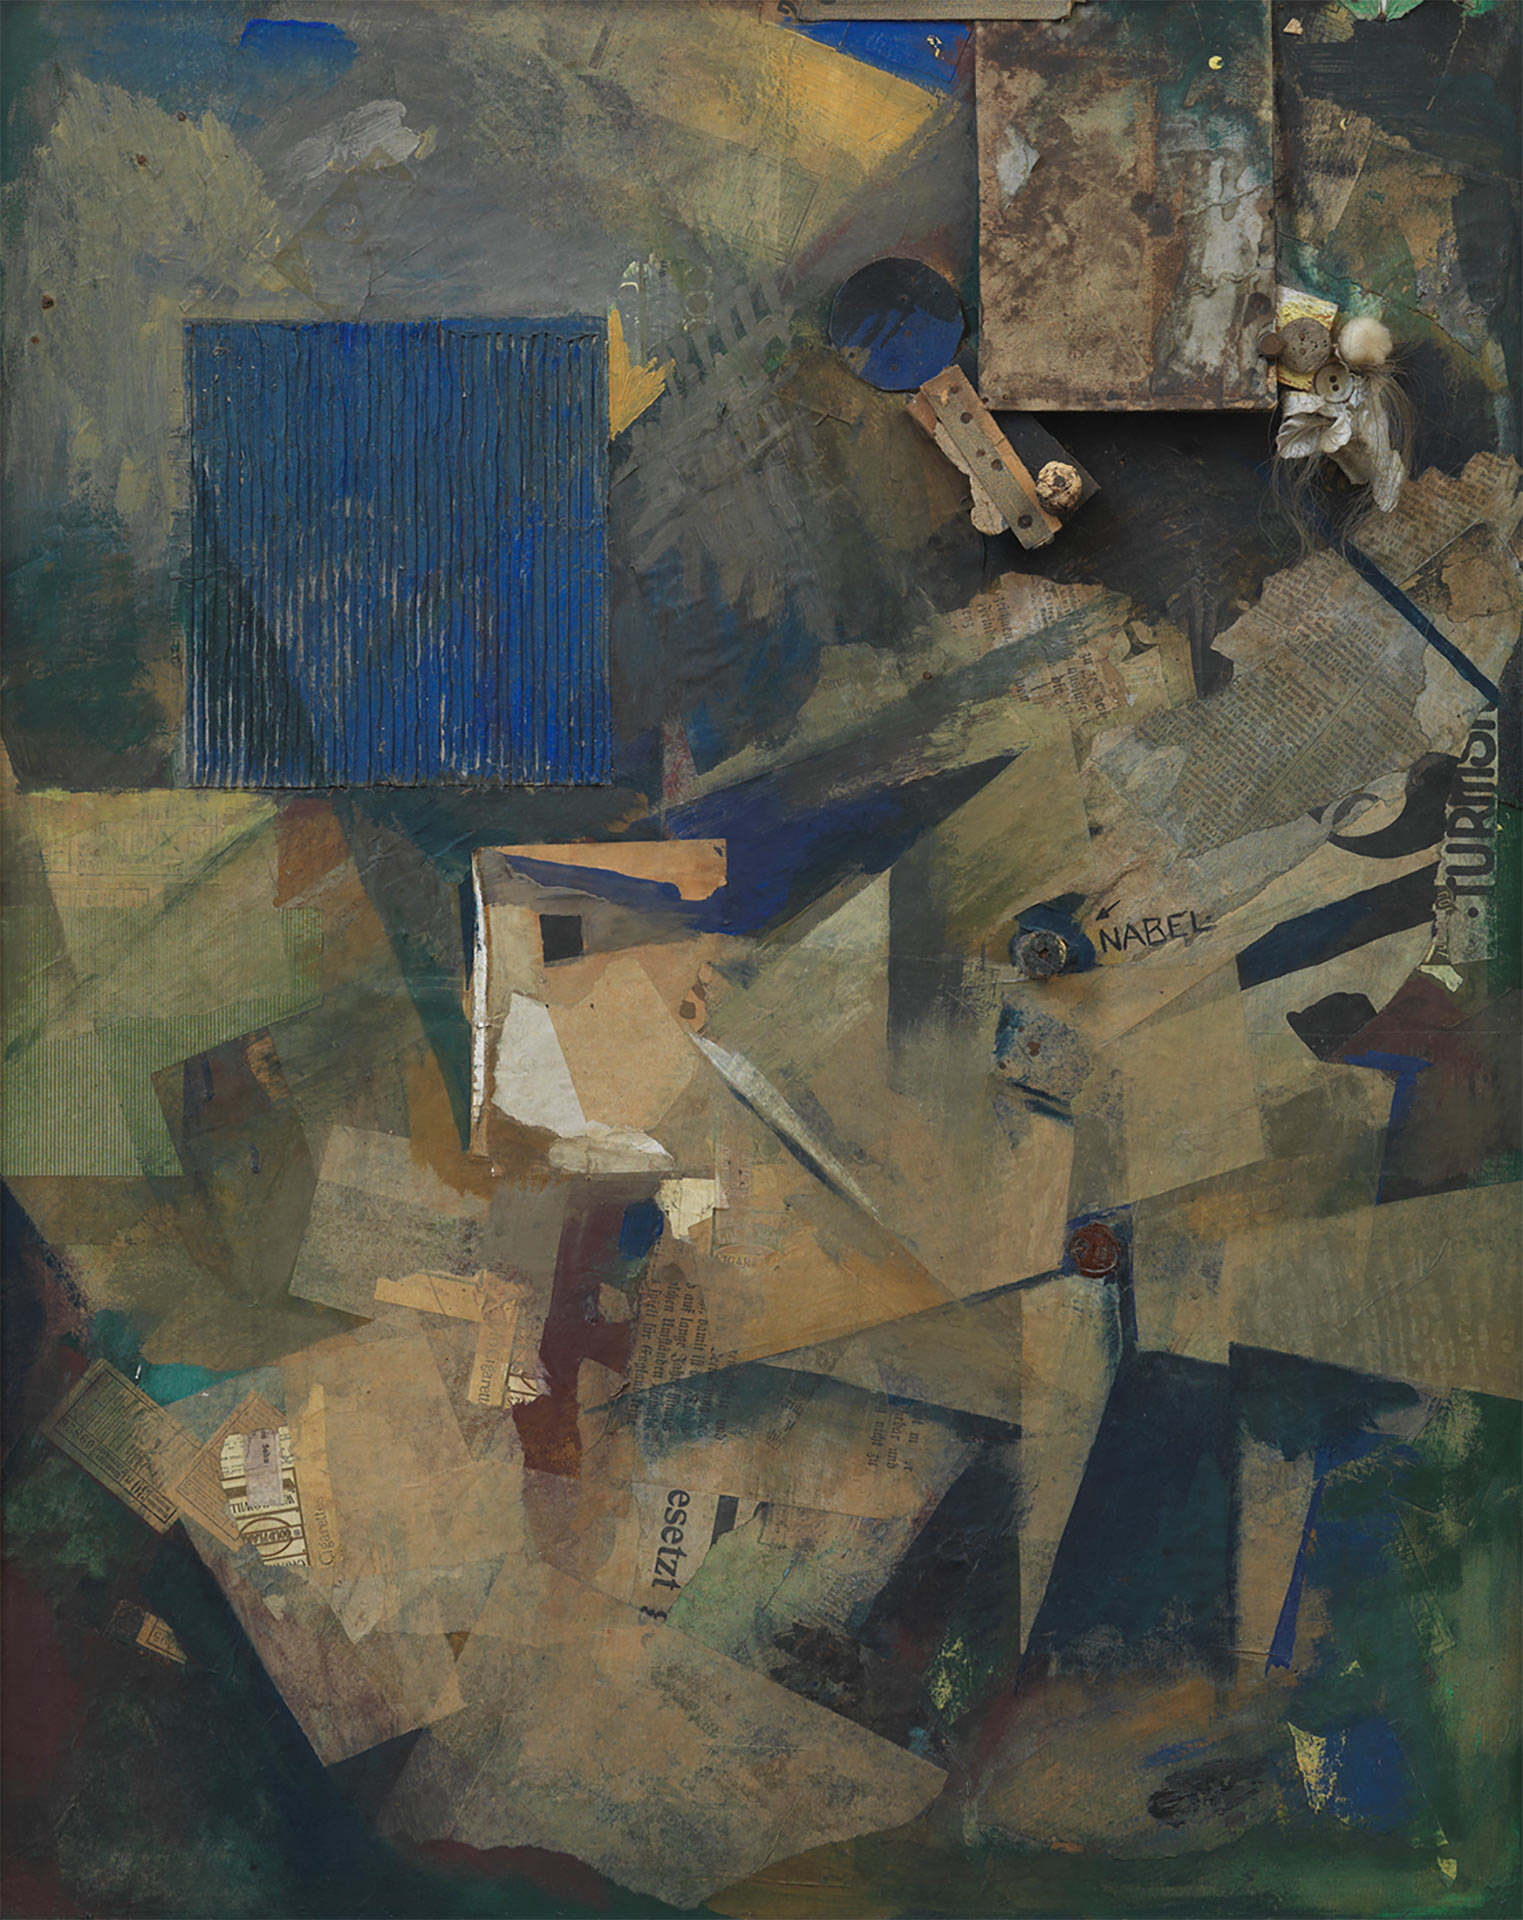 Abbildung des Werks Merzbild 21b von Kurt Schwitters, auf dem verschiedene Materialien zu einer Collage zusammengefügt und übermalt wurden.